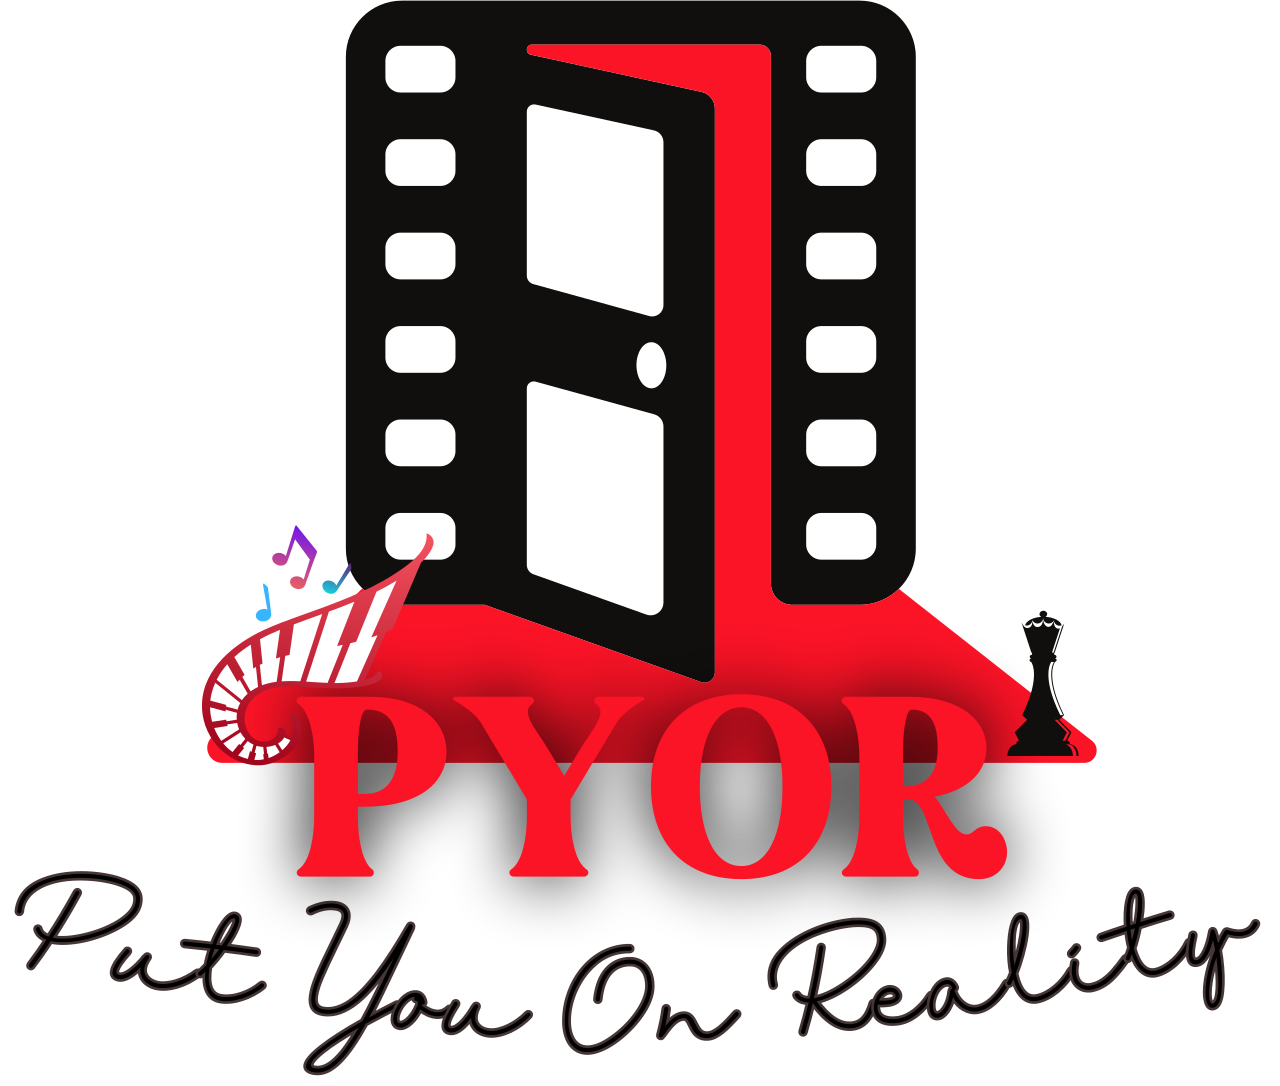 PYOR's logo